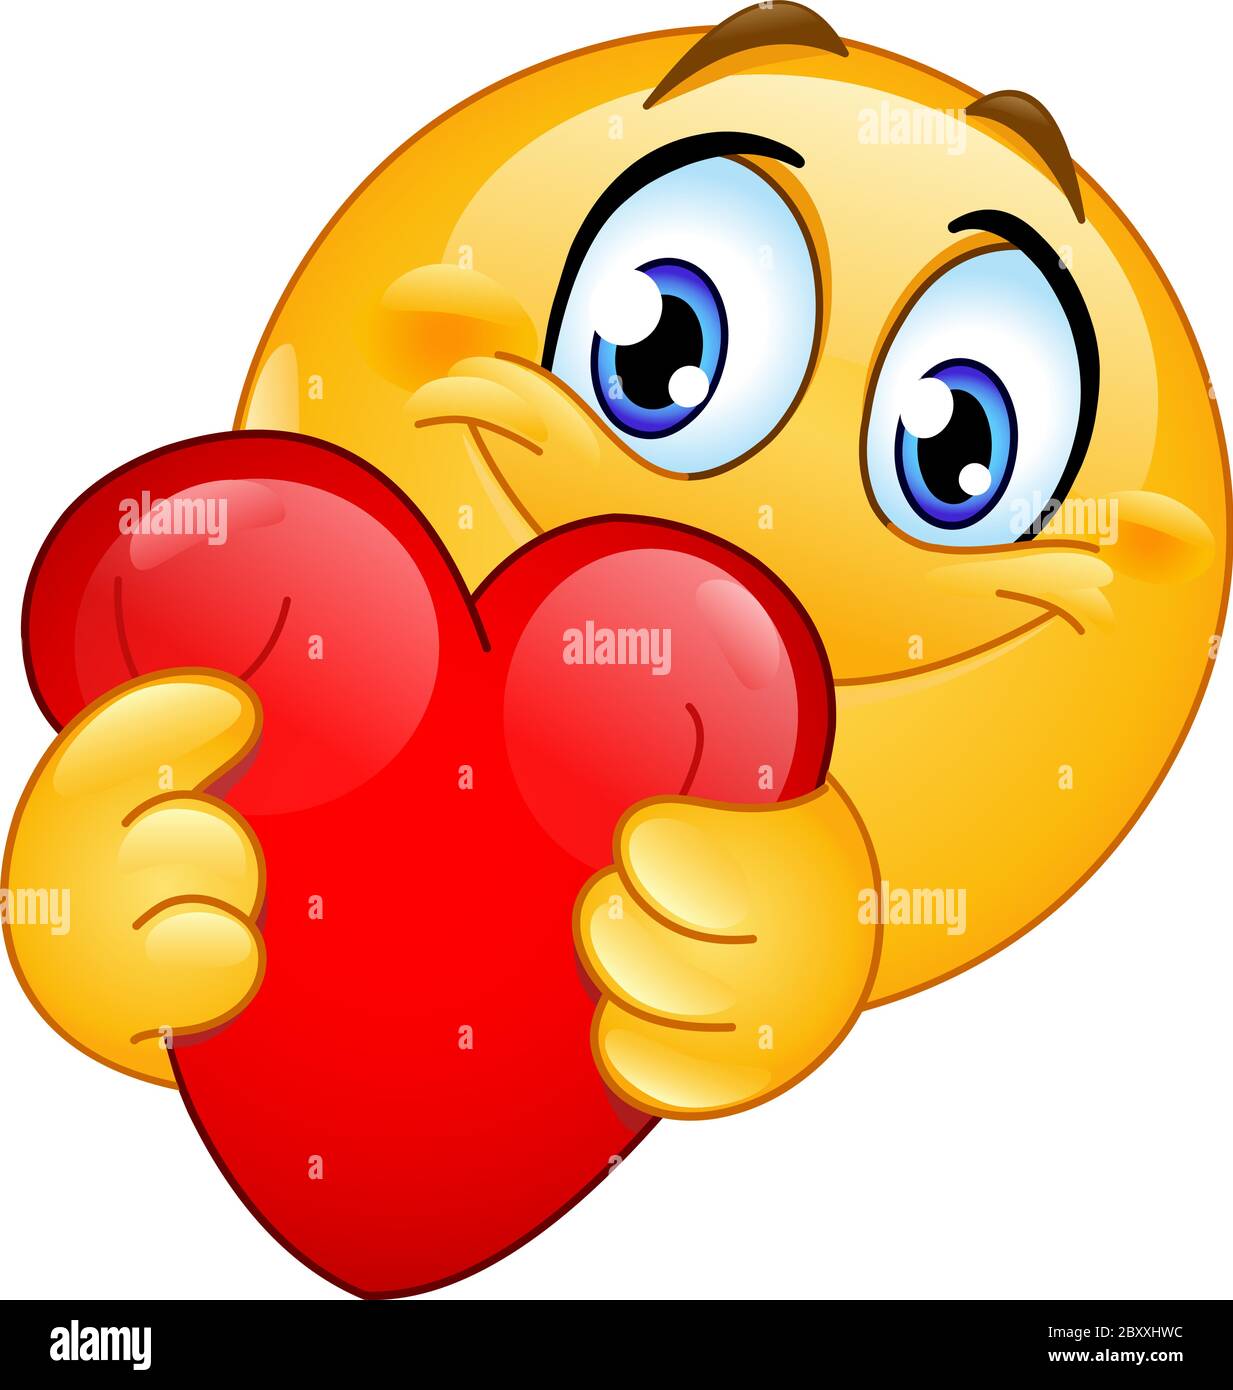 Happy emoji emoticon hugging a red heart Stock Vector Image & Art - Alamy